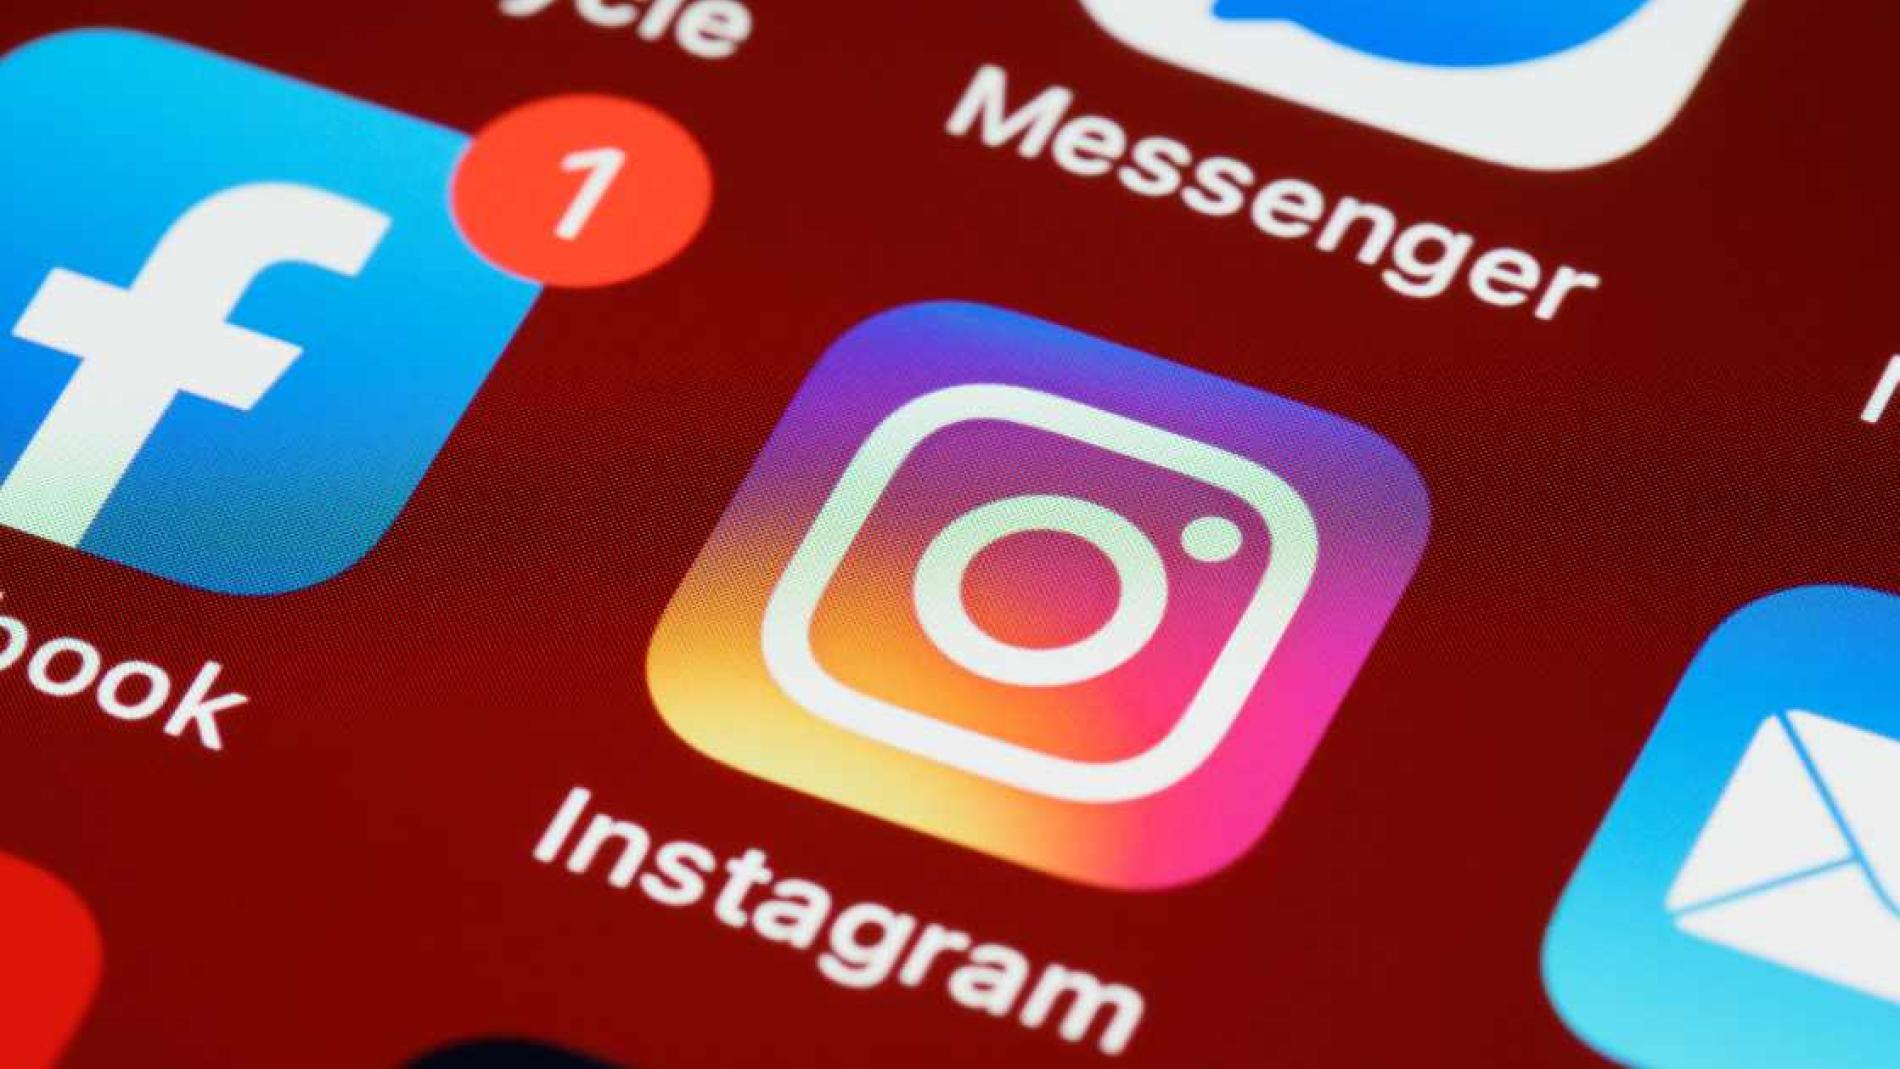 Usuarios reportan fallas en Facebook e Instagram este martes - El Tiempo